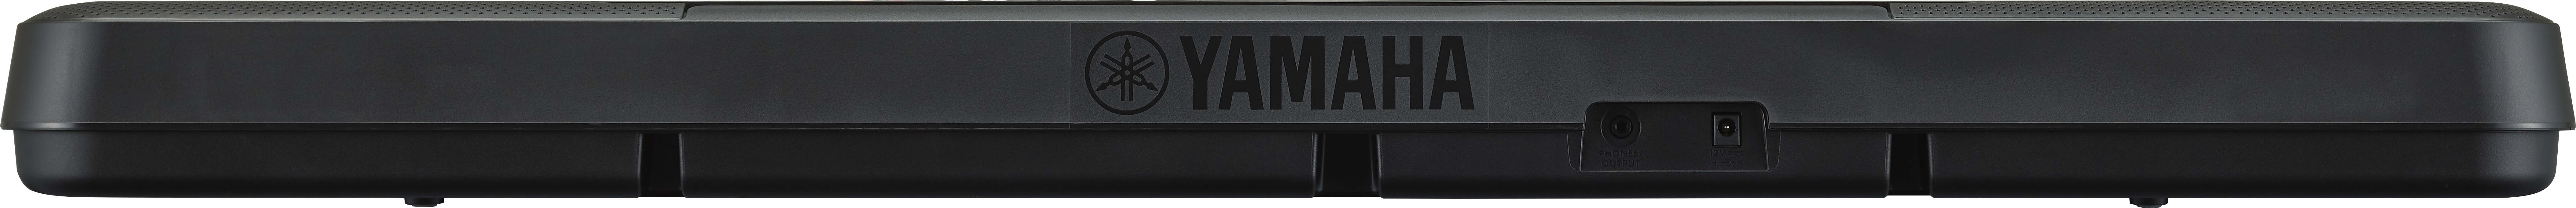 Yamaha PSR-F52